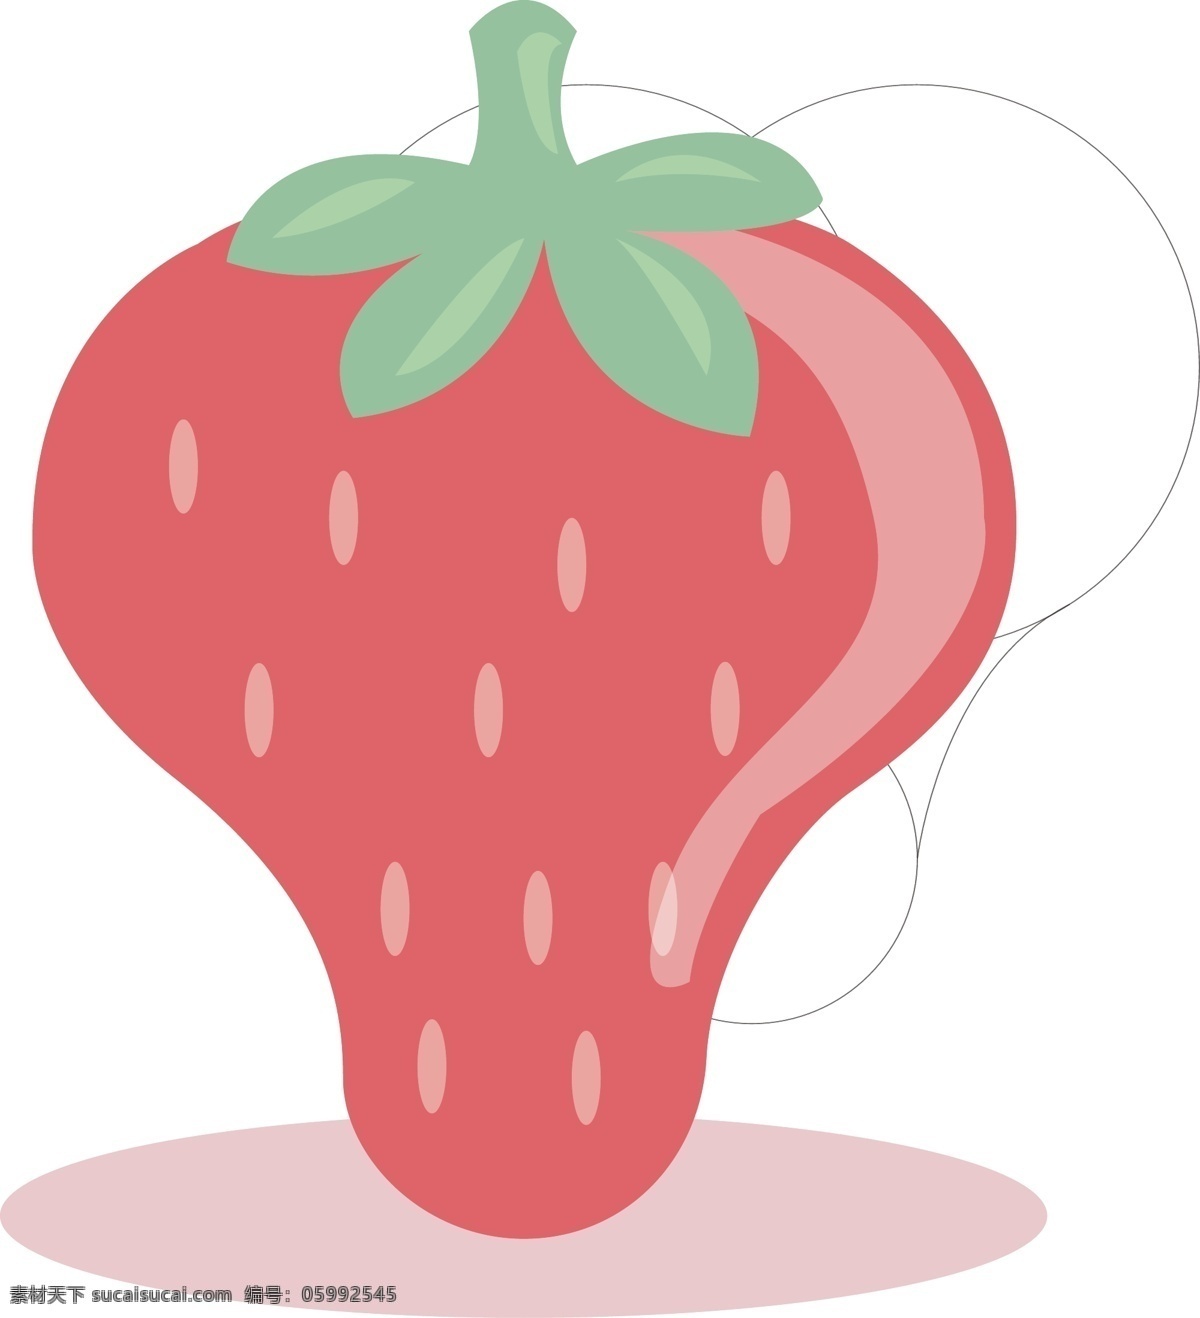 清新 可爱 扁平 风格 草莓 图案 水果 美味 食物 图标 美食 红色 strawberry 甜味 好吃 食品 吃货 鲜果